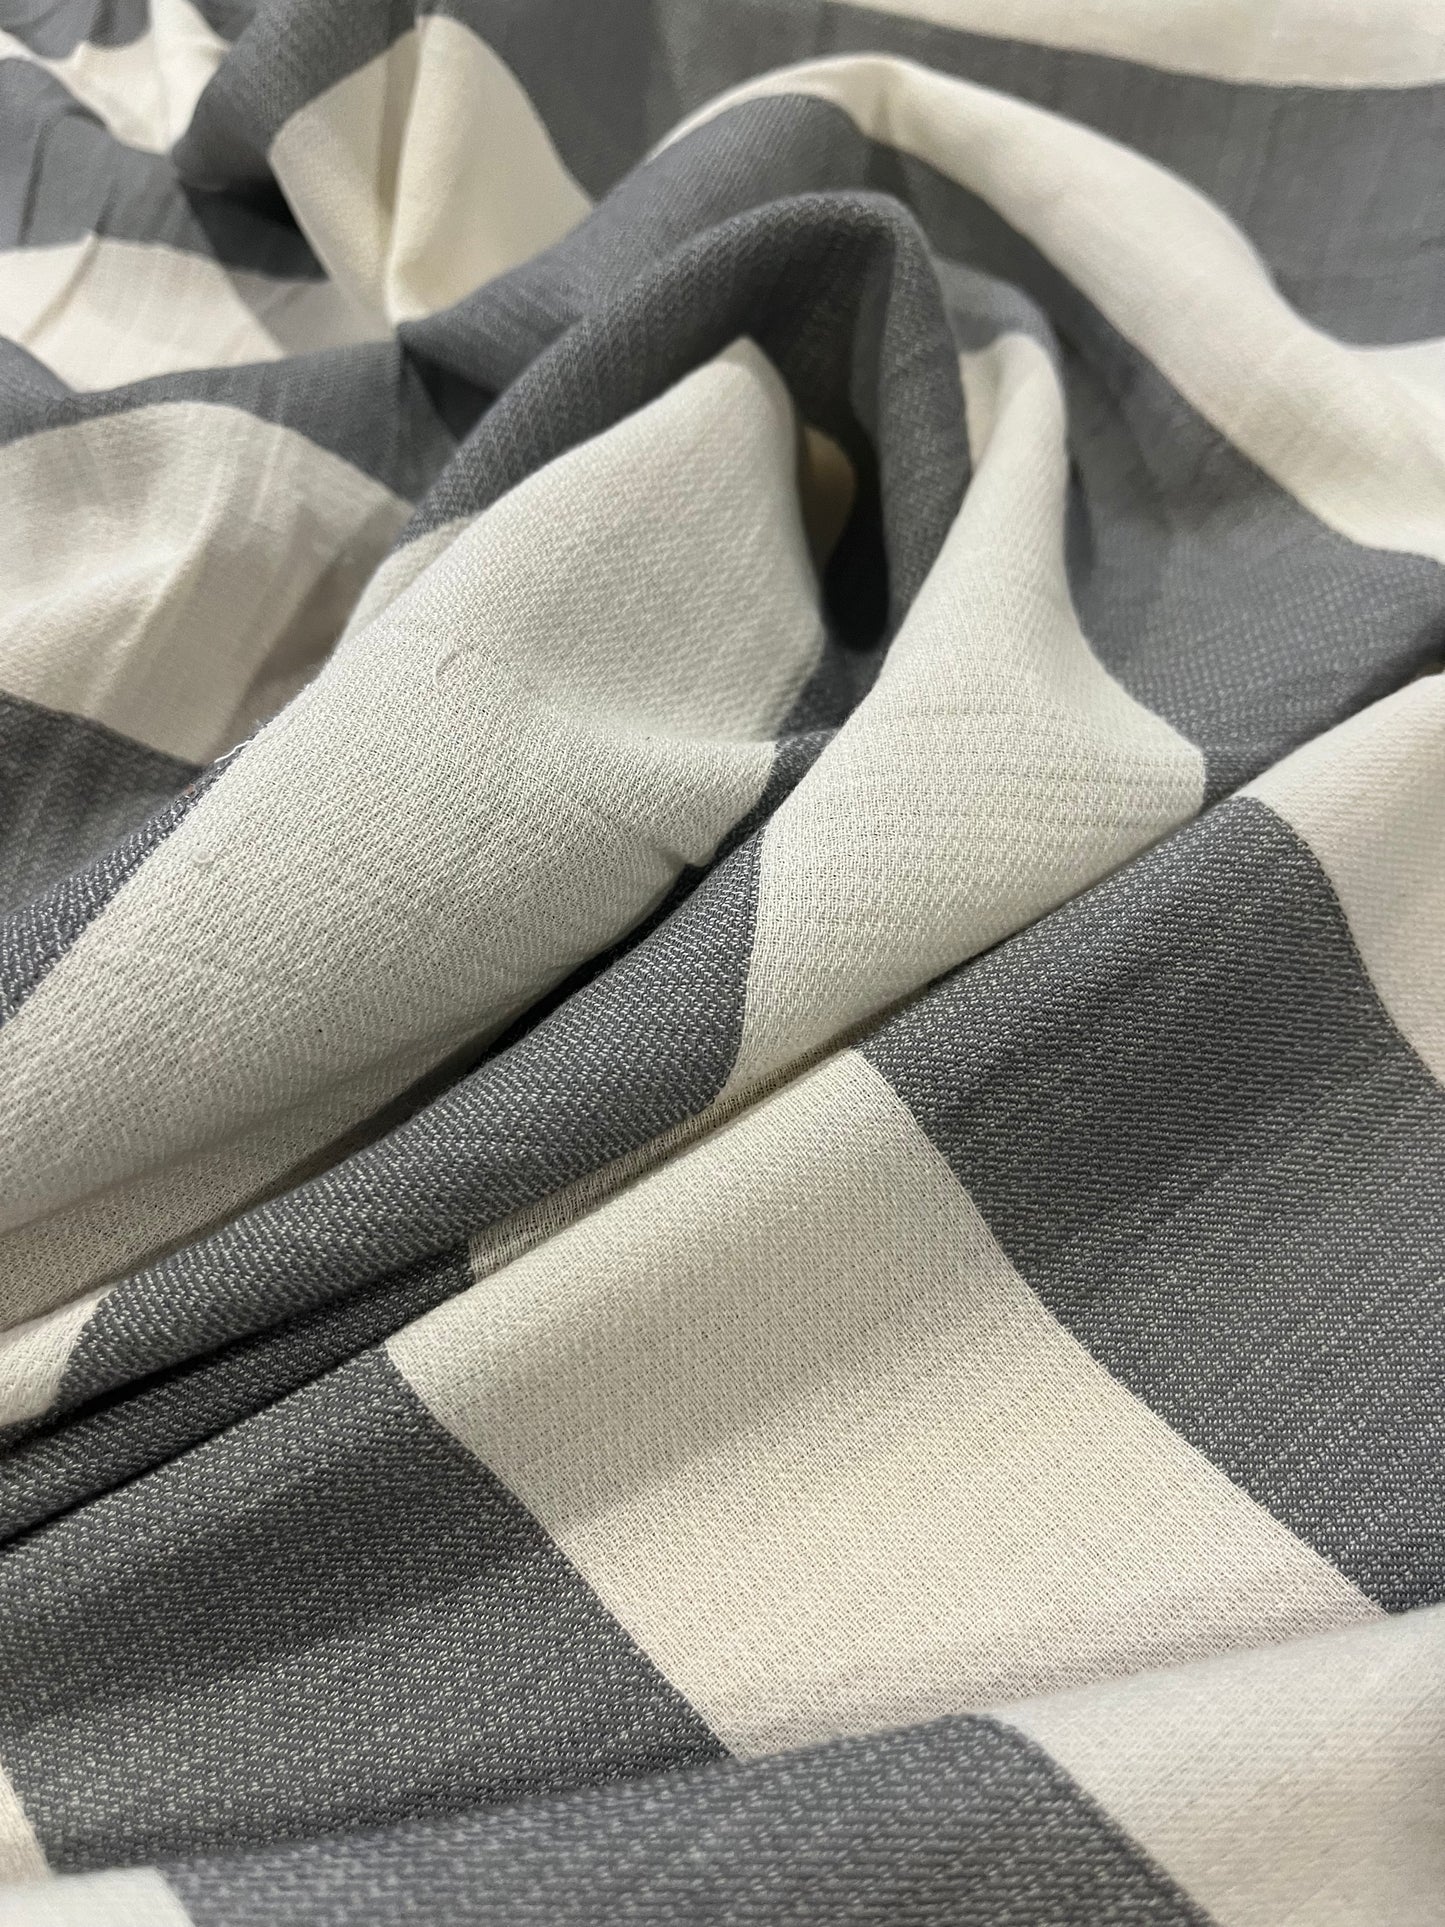 TRENTO 003 woven cotton stripe greywhite